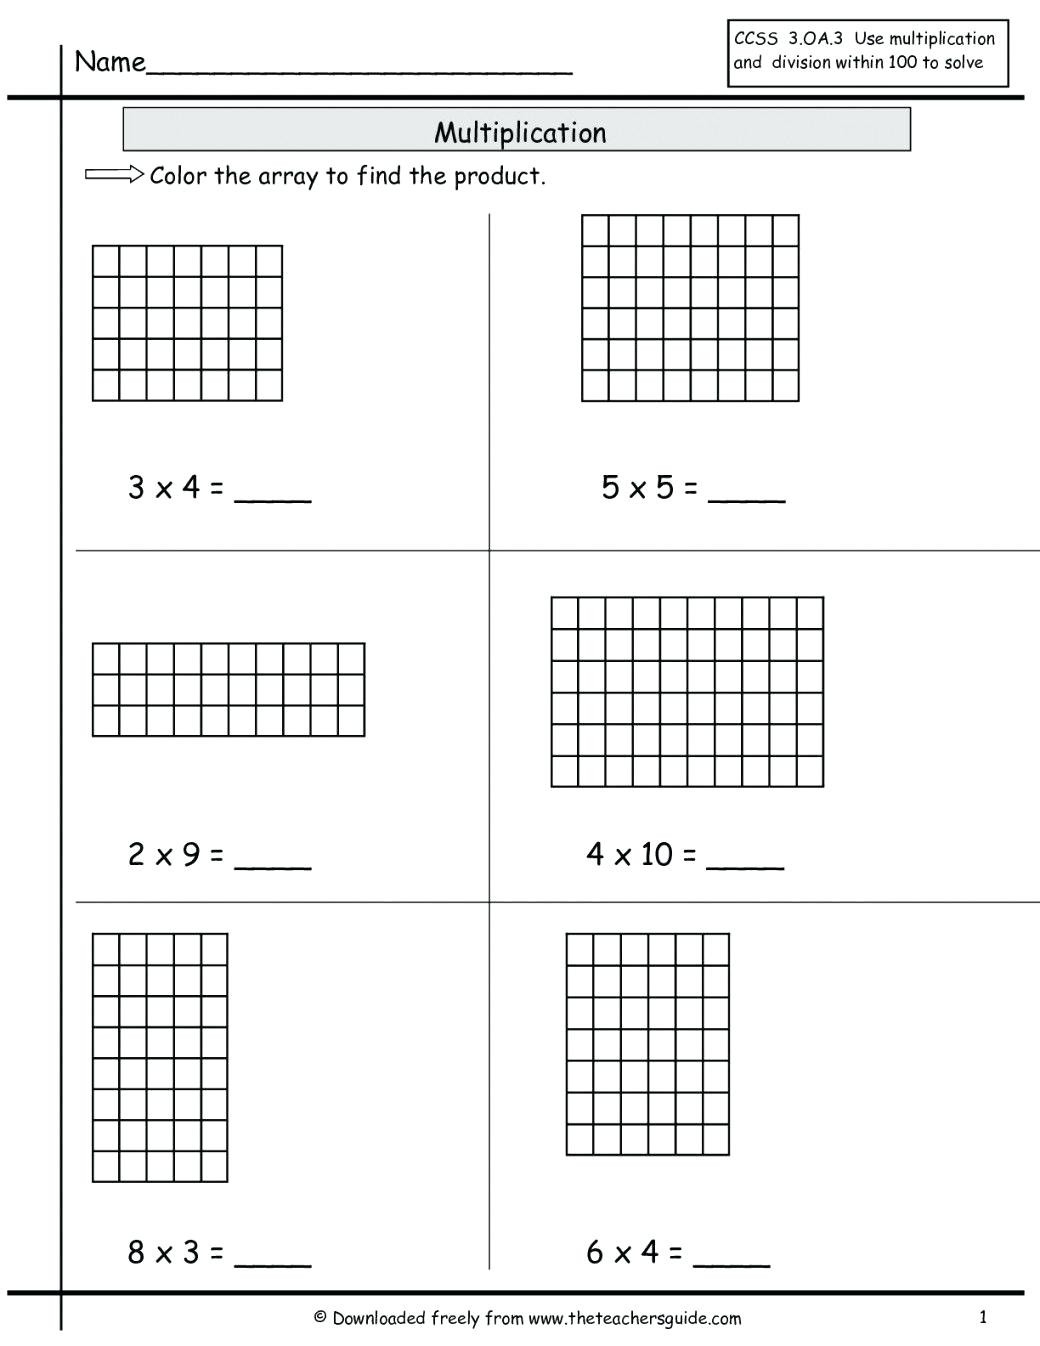 Grid Method Multiplication Worksheets Year 4